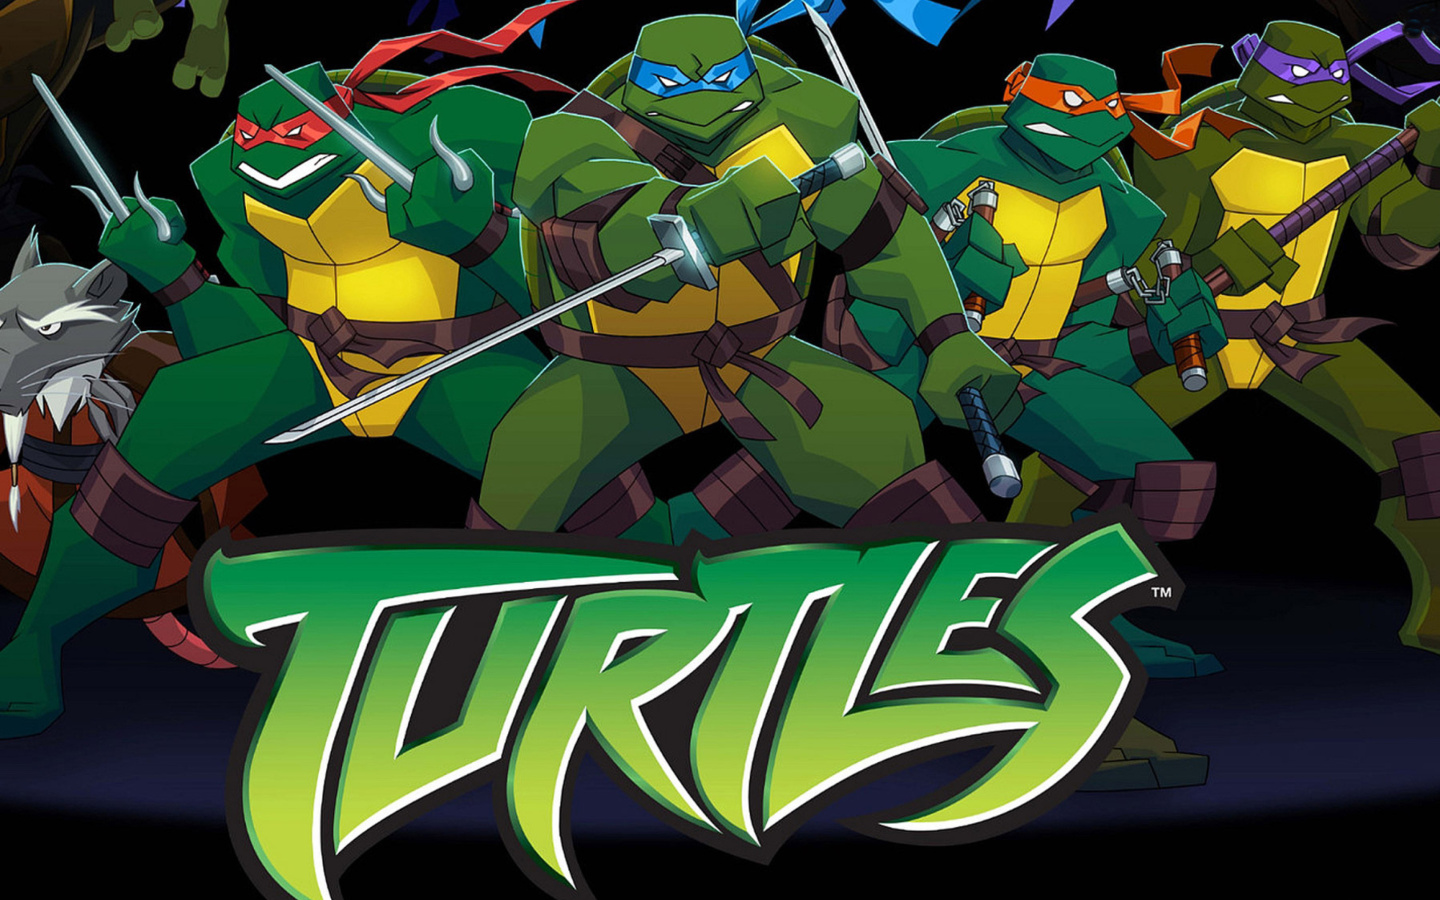 Turtles Forever wallpaper 1440x900